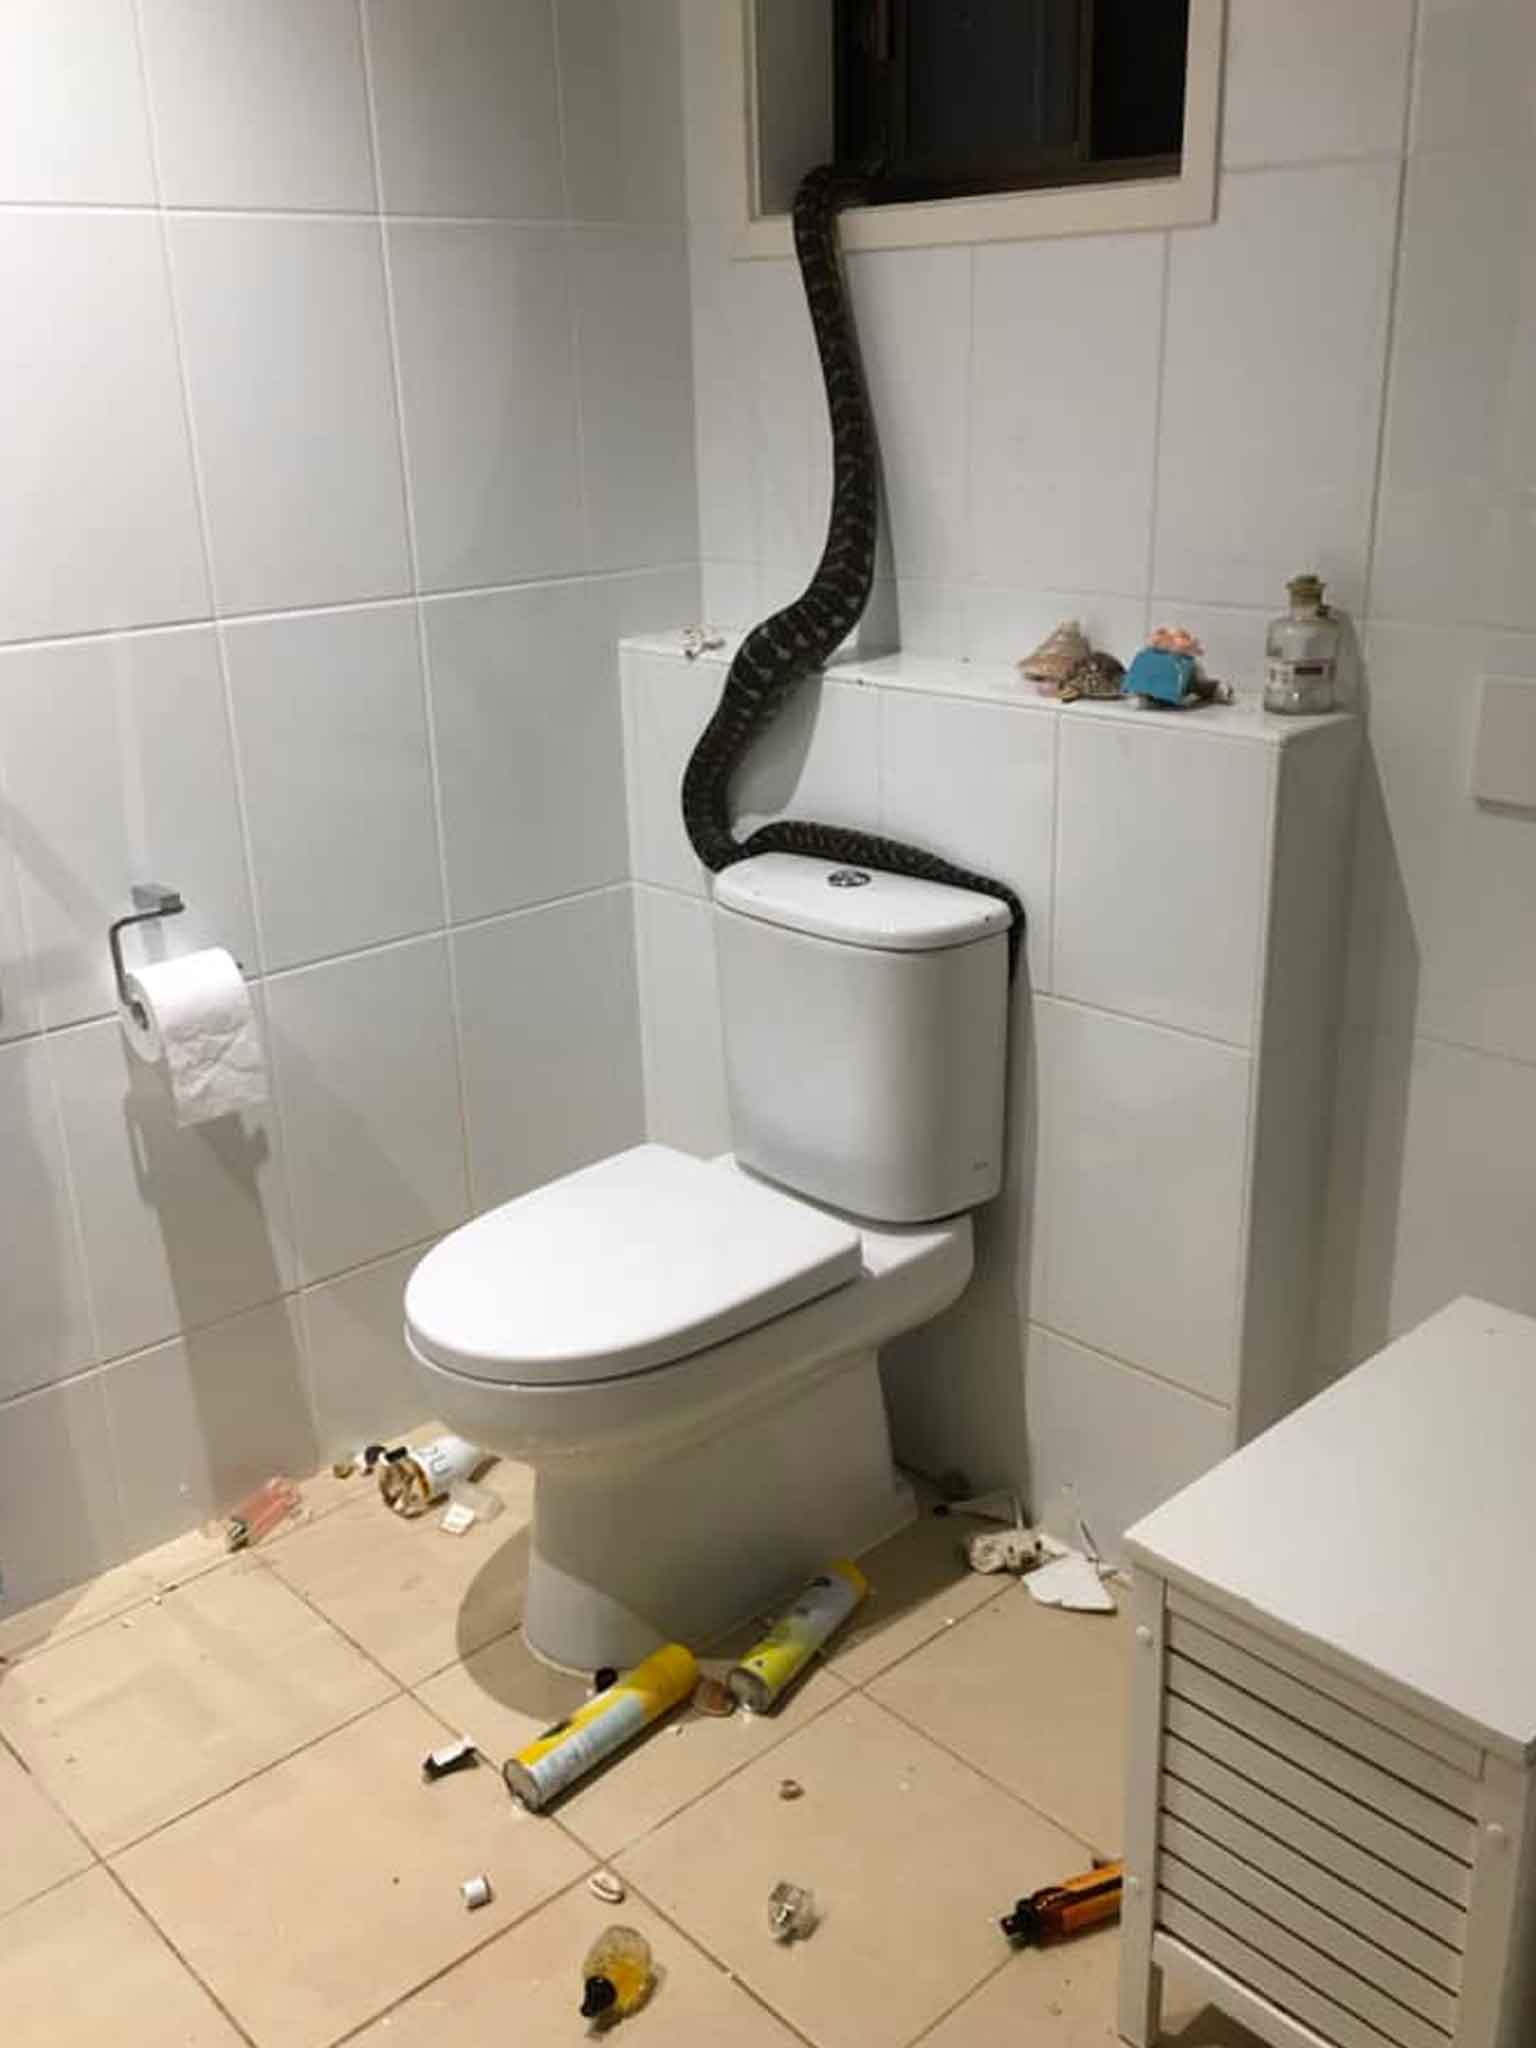 2,5 metrelik piton Avustralyalı ailenin banyosunu darmadağın etti